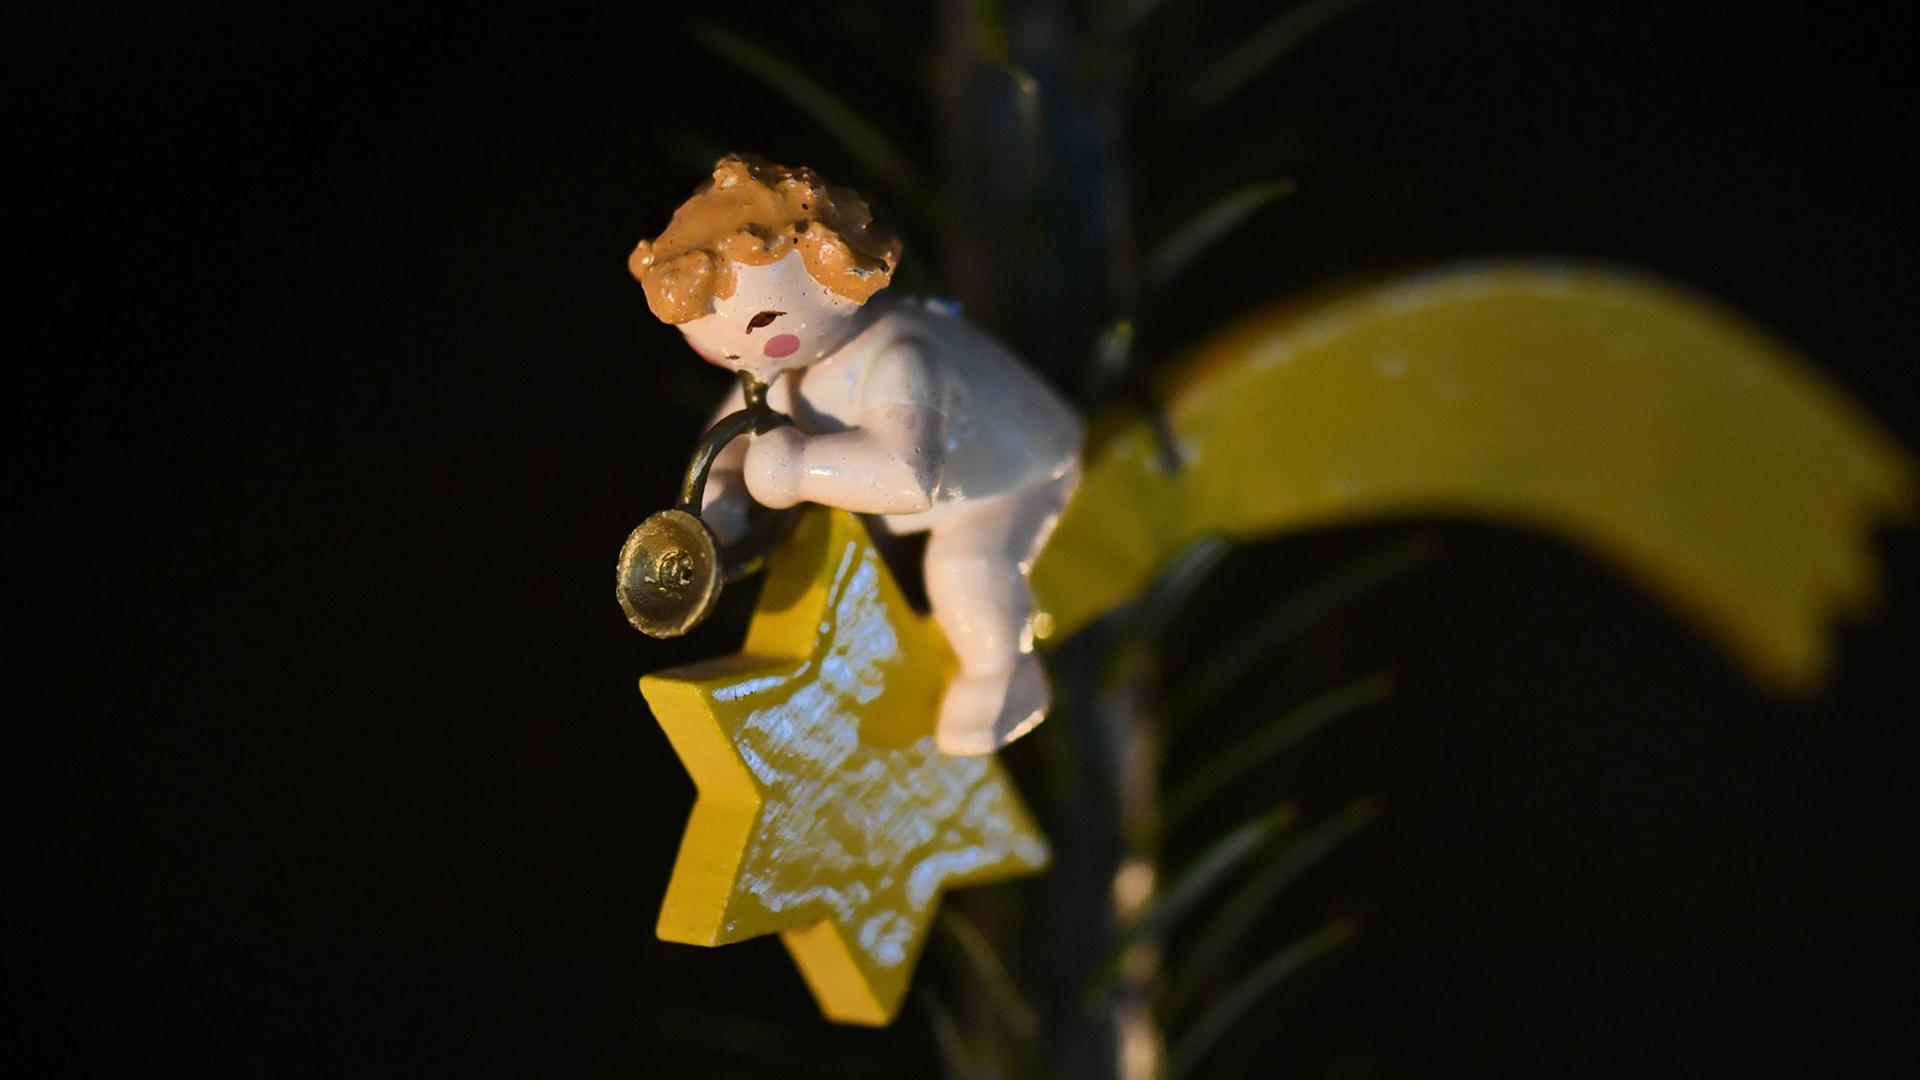 Anhänger an einem Weihnachtsbaum: Ein Holzengel, der in ein Horn bläst, sitzt auf einem Stern mit Schweif.